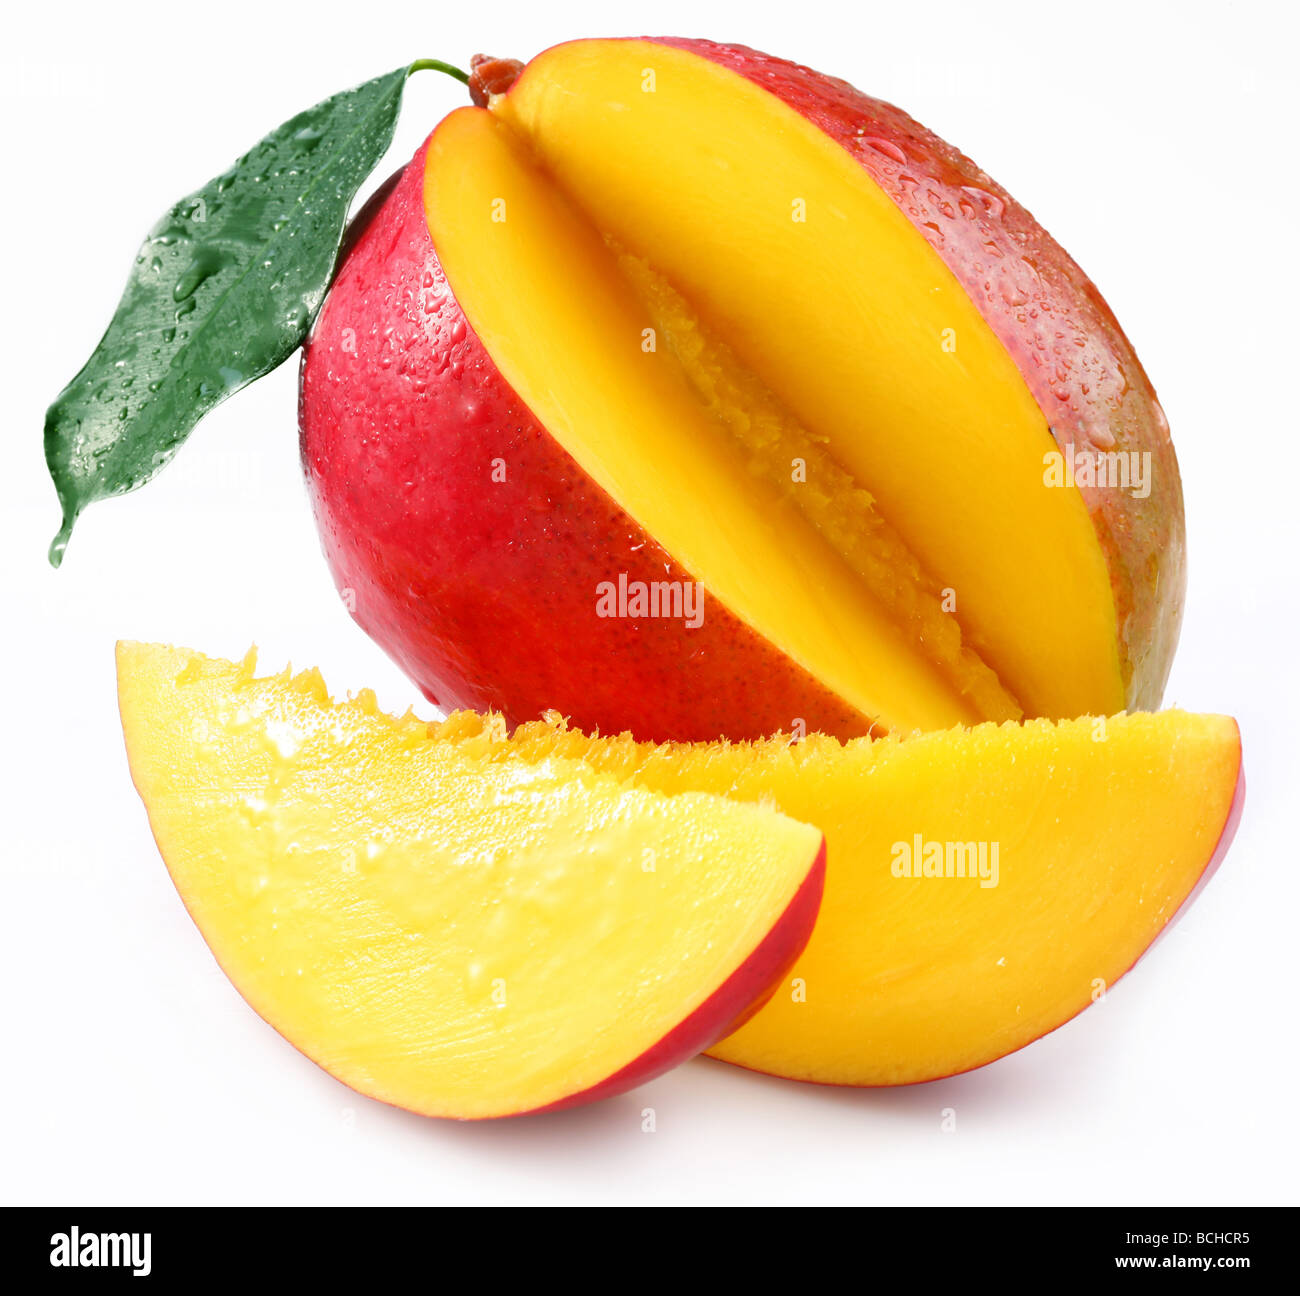 Mango with lobules on a white background Stock Photo